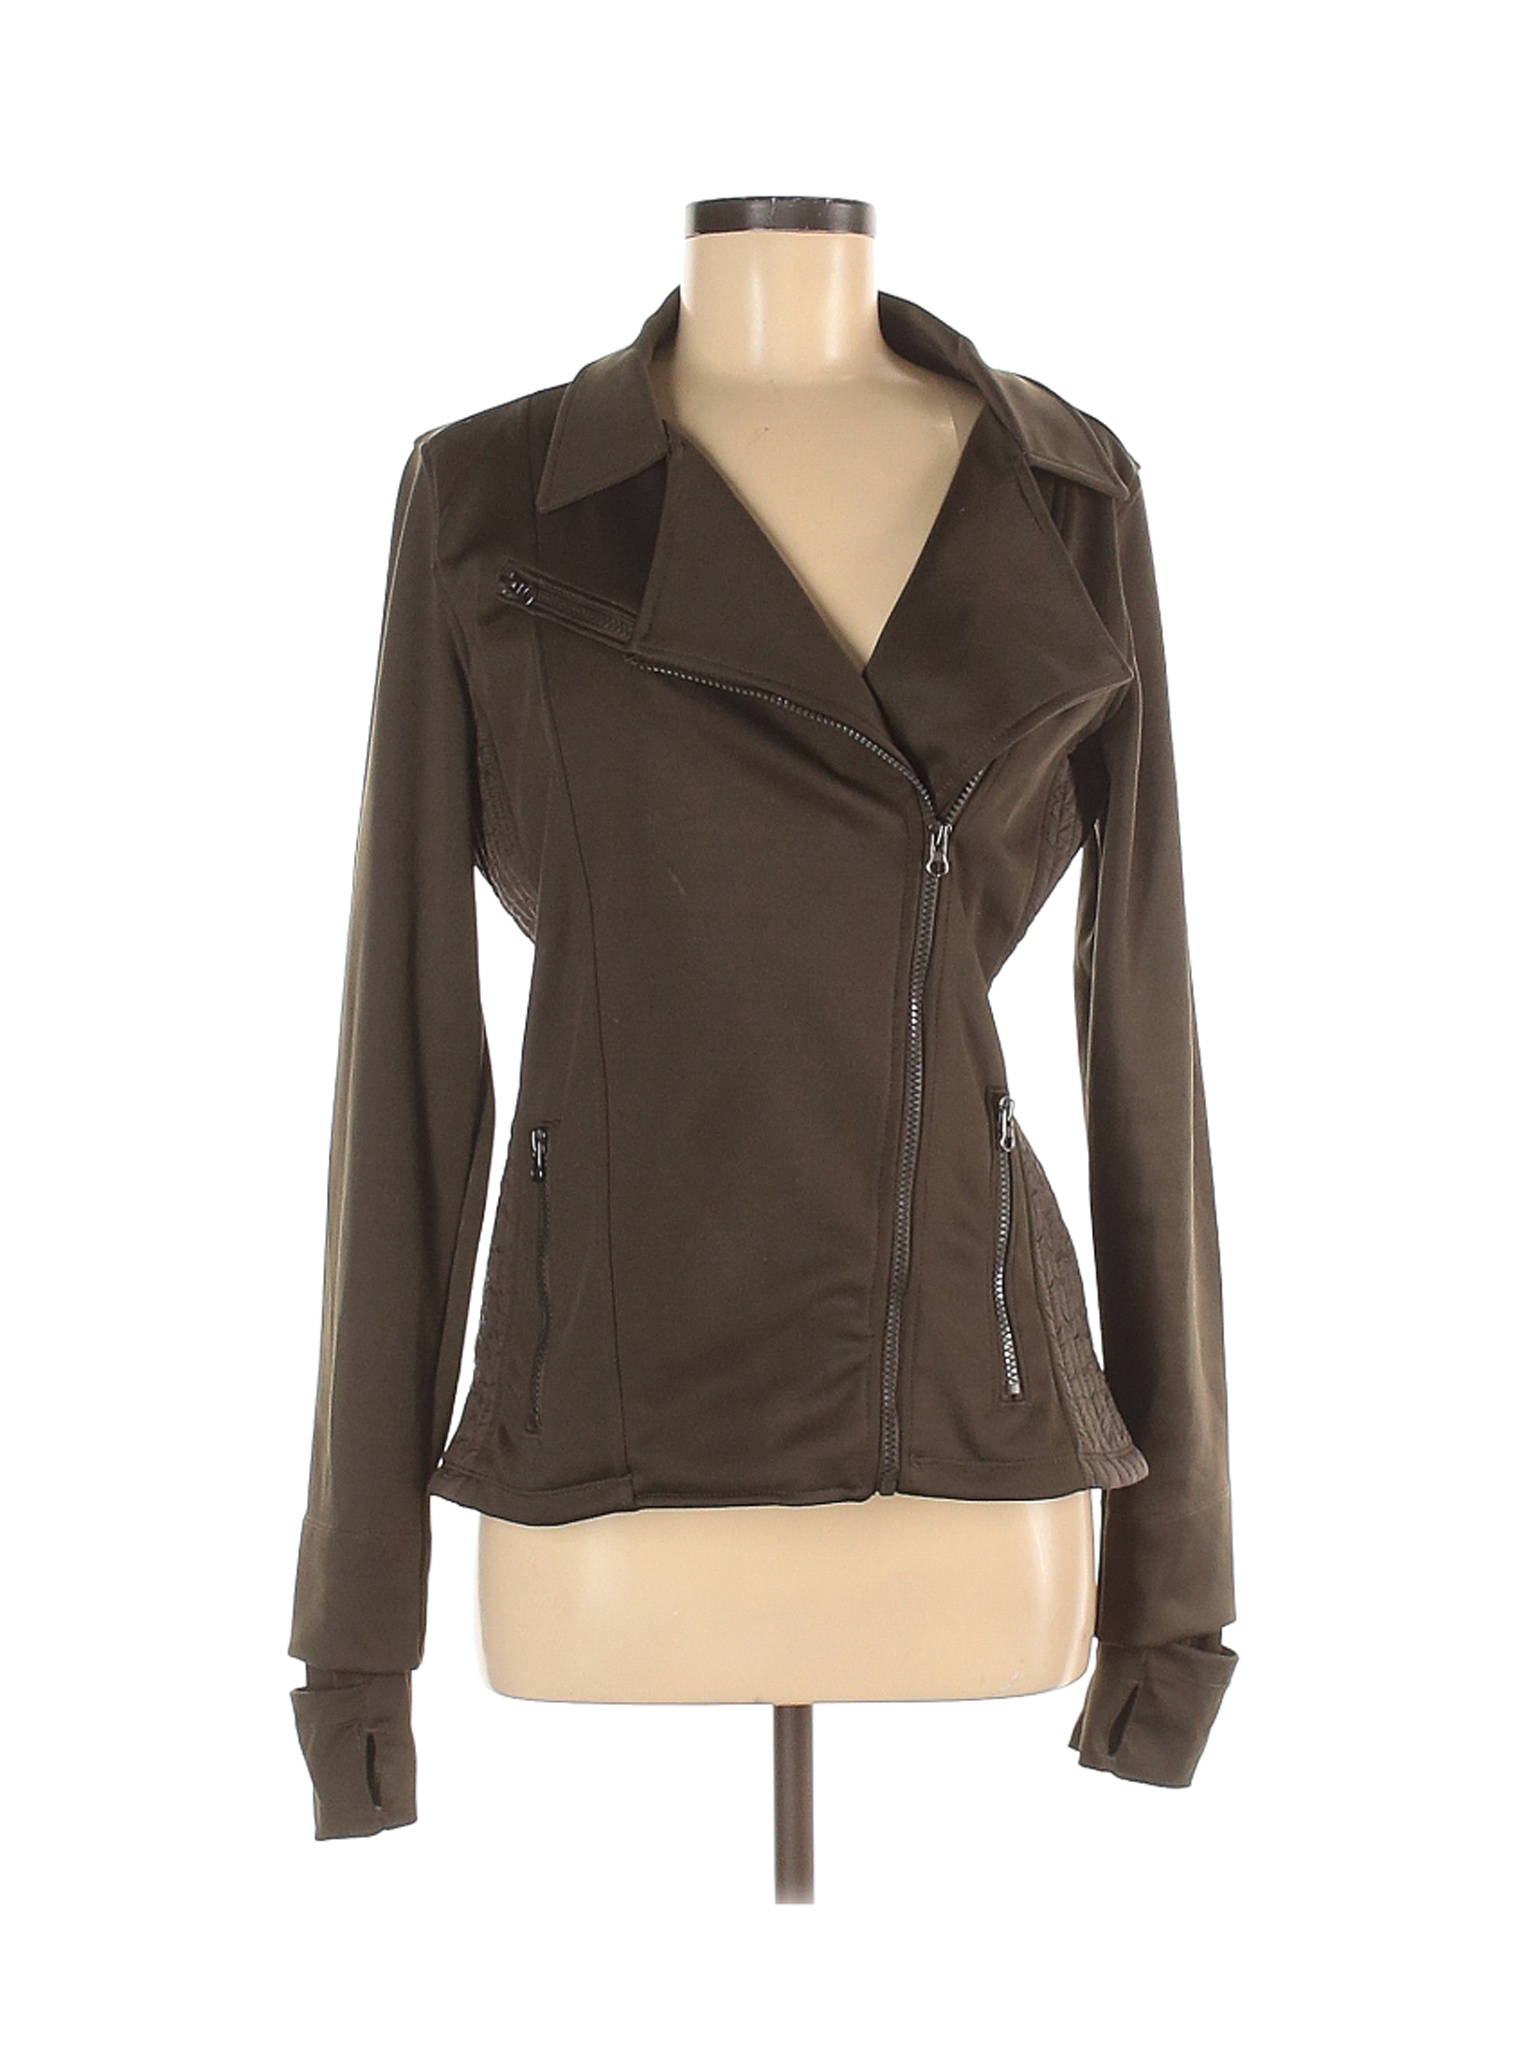 Mondetta Women Brown Track Jacket M | eBay